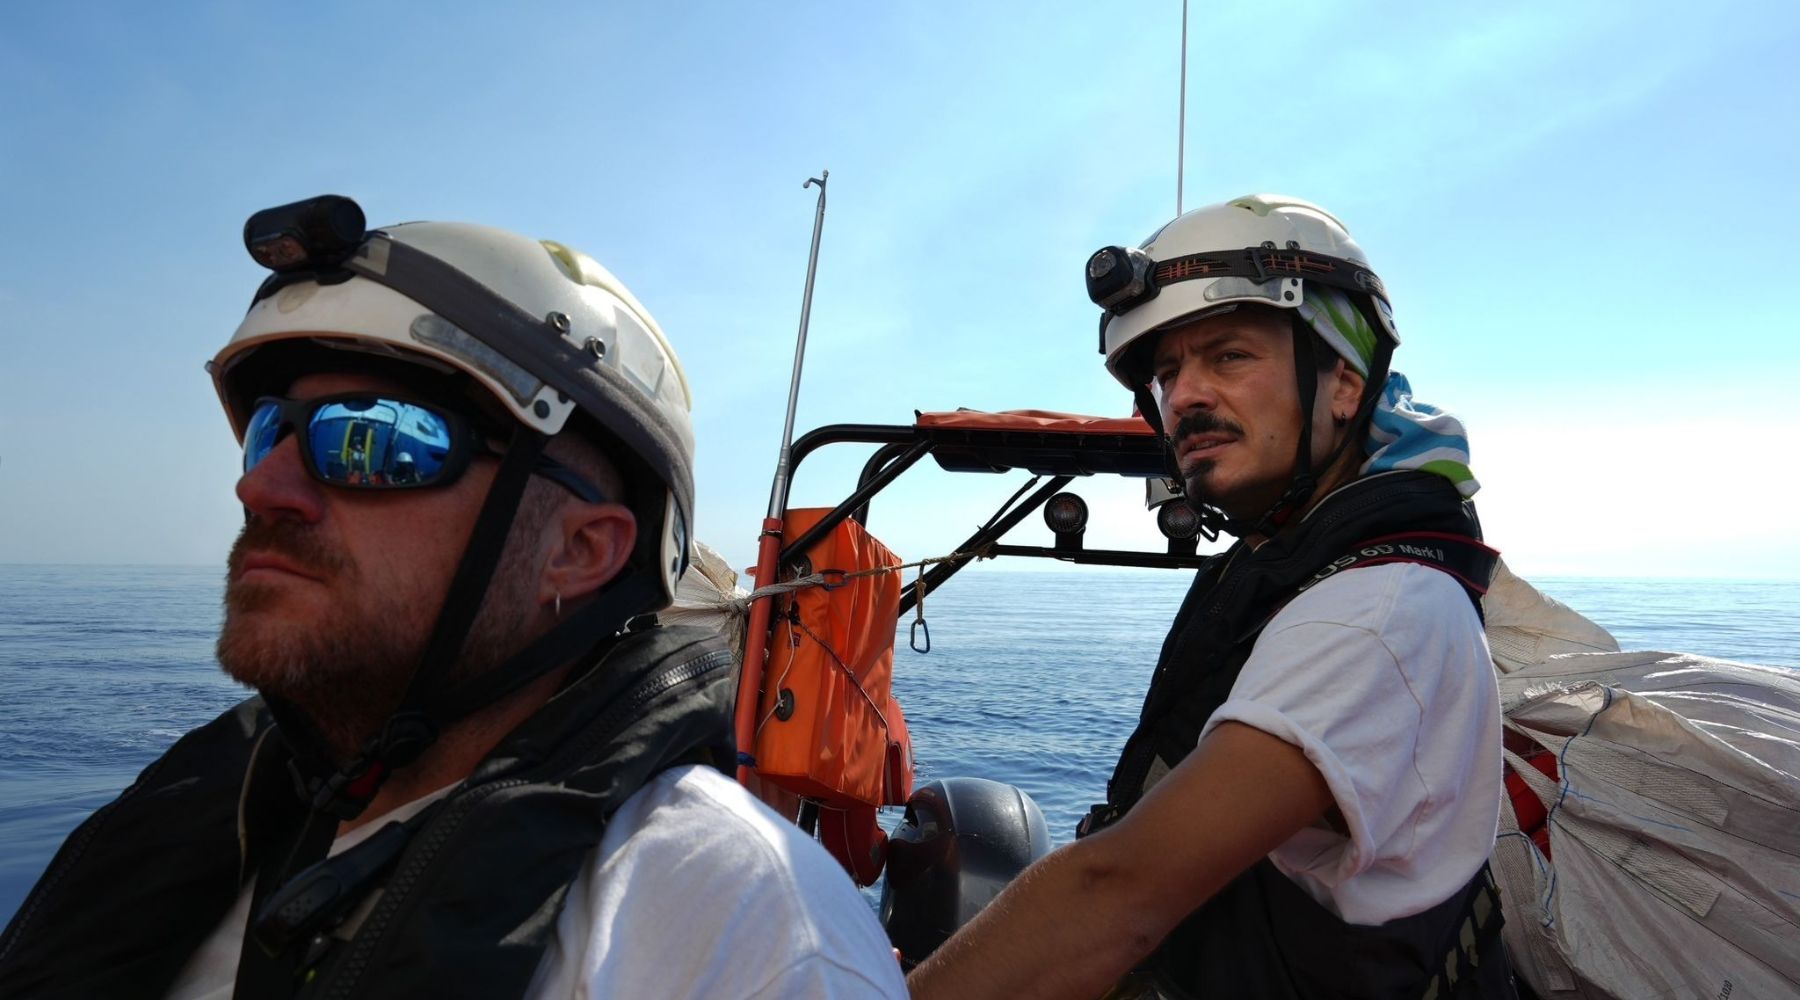 Stefan Pejović lors du sauvetage effectué par MSF - Rescue 1 - rotation 35